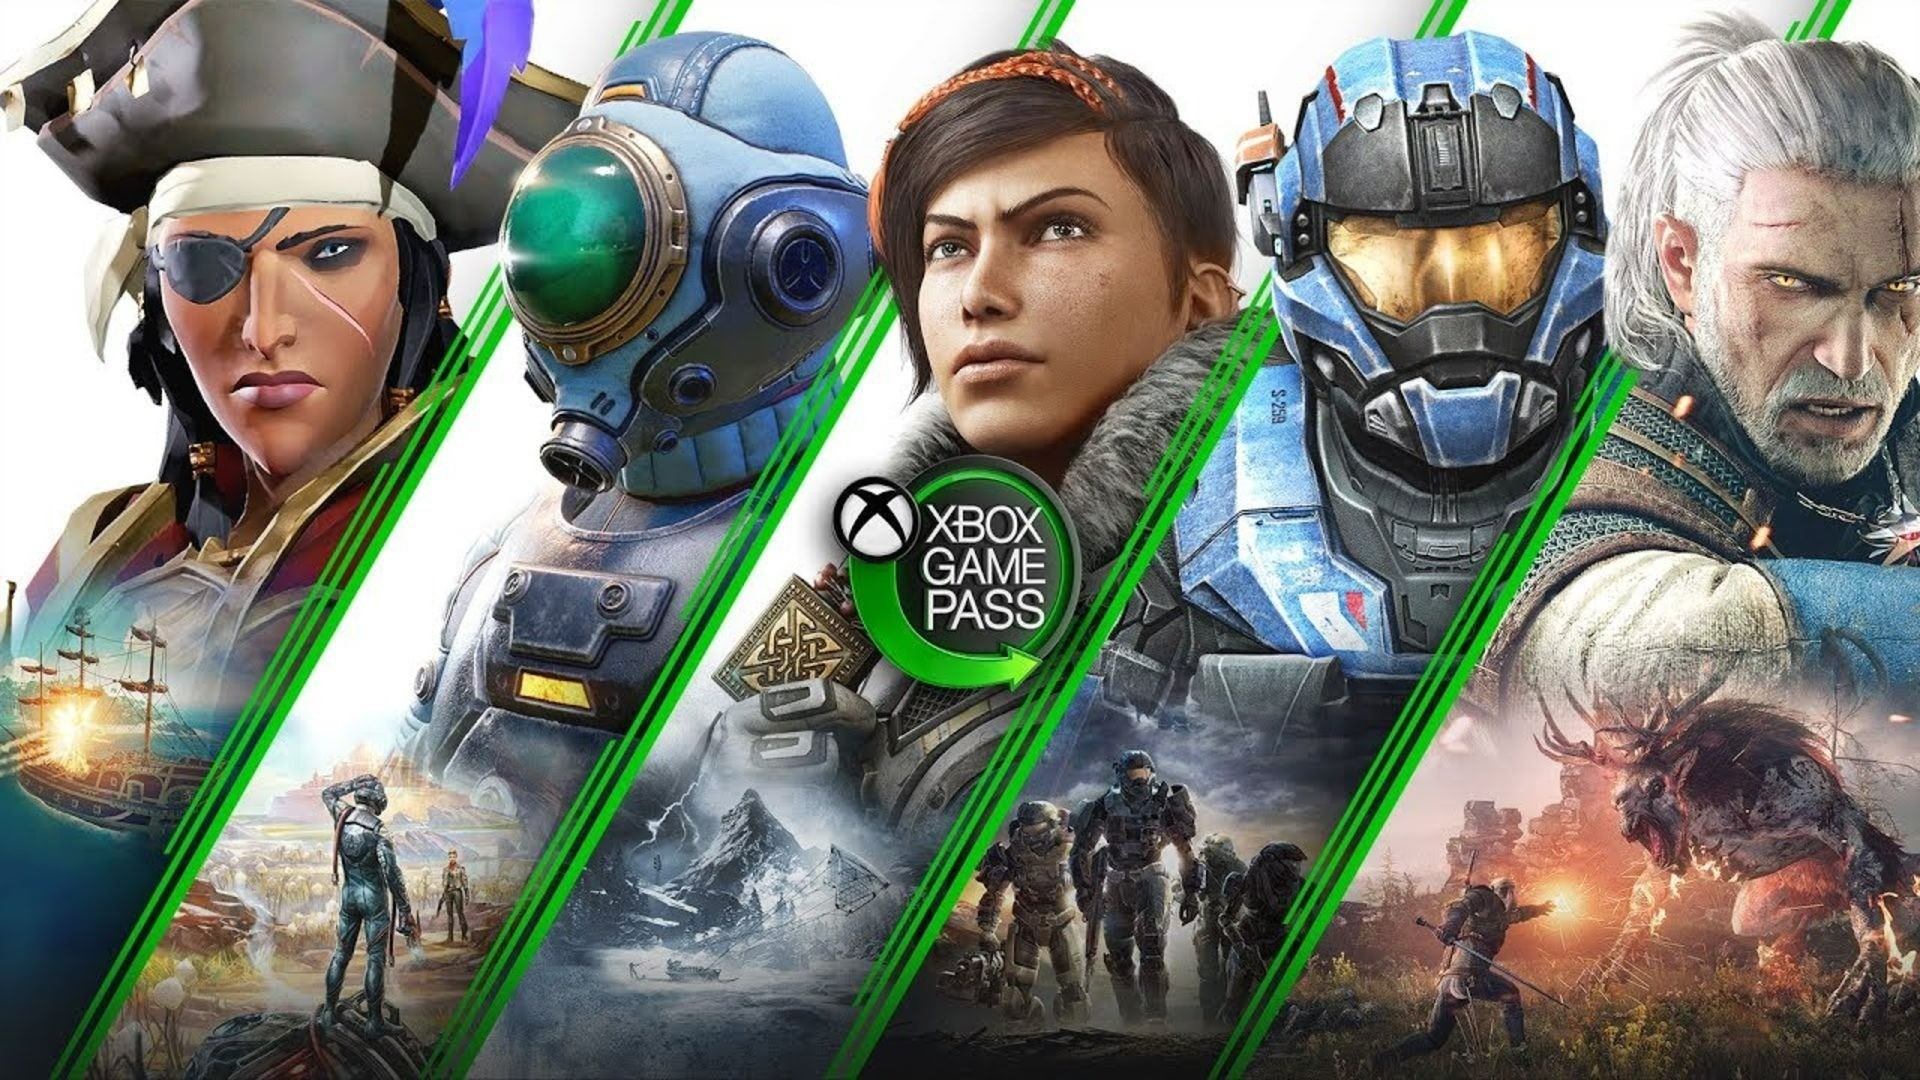 UM NOVO JOGO acabou de chegar no Xbox Game Pass! - 10 de outubro